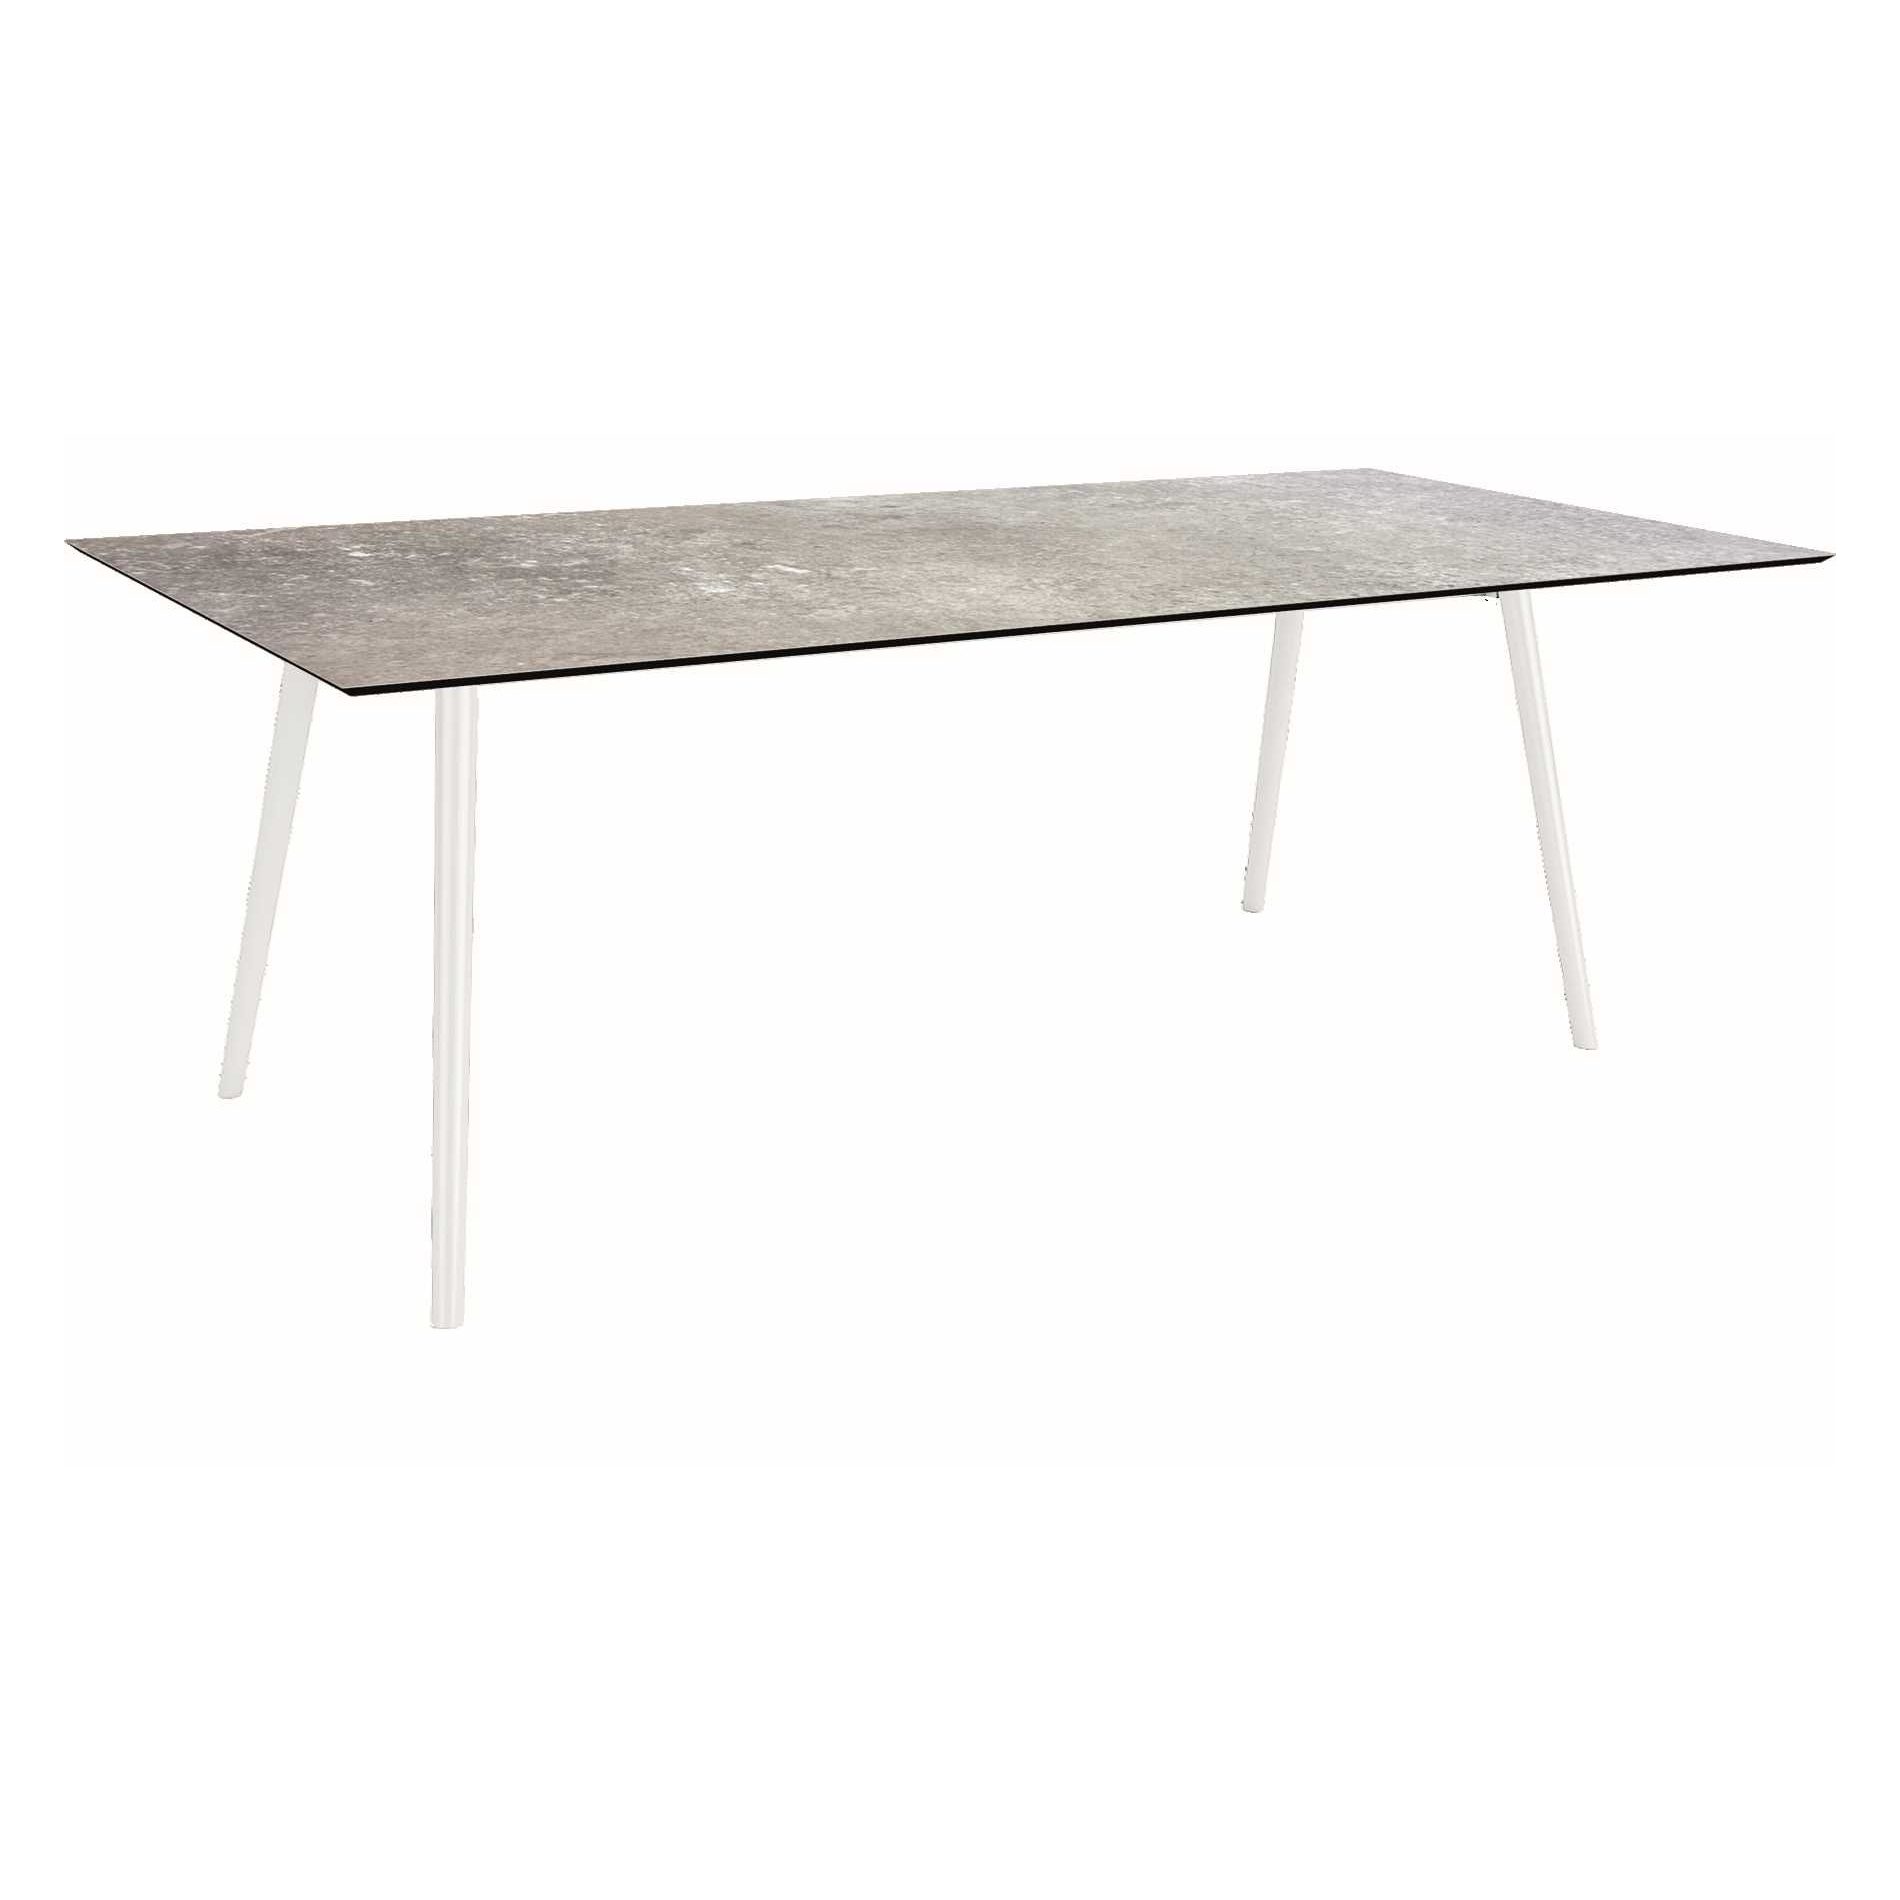 Stern Tisch "Interno", Größe 220x100cm, Alu weiß, Rundrohr, Tischplatte HPL Vintage Stone